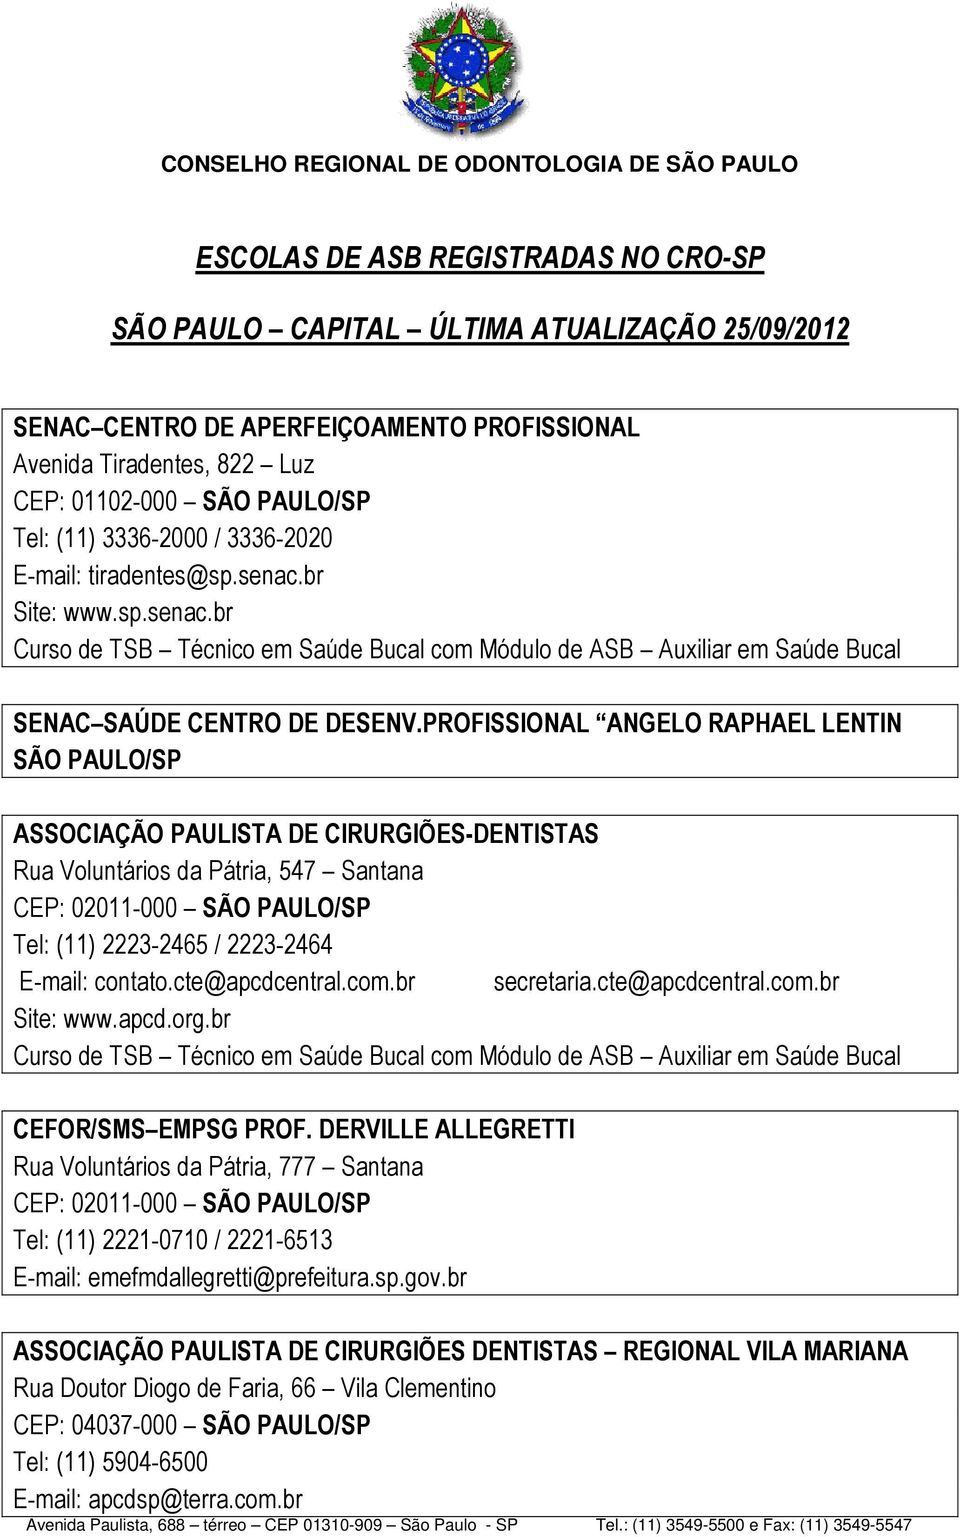 PROFISSIONAL ANGELO RAPHAEL LENTIN SÃO PAULO/SP ASSOCIAÇÃO PAULISTA DE CIRURGIÕES-DENTISTAS Rua Voluntários da Pátria, 547 Santana CEP: 02011-000 SÃO PAULO/SP Tel: (11) 2223-2465 / 2223-2464 E-mail: